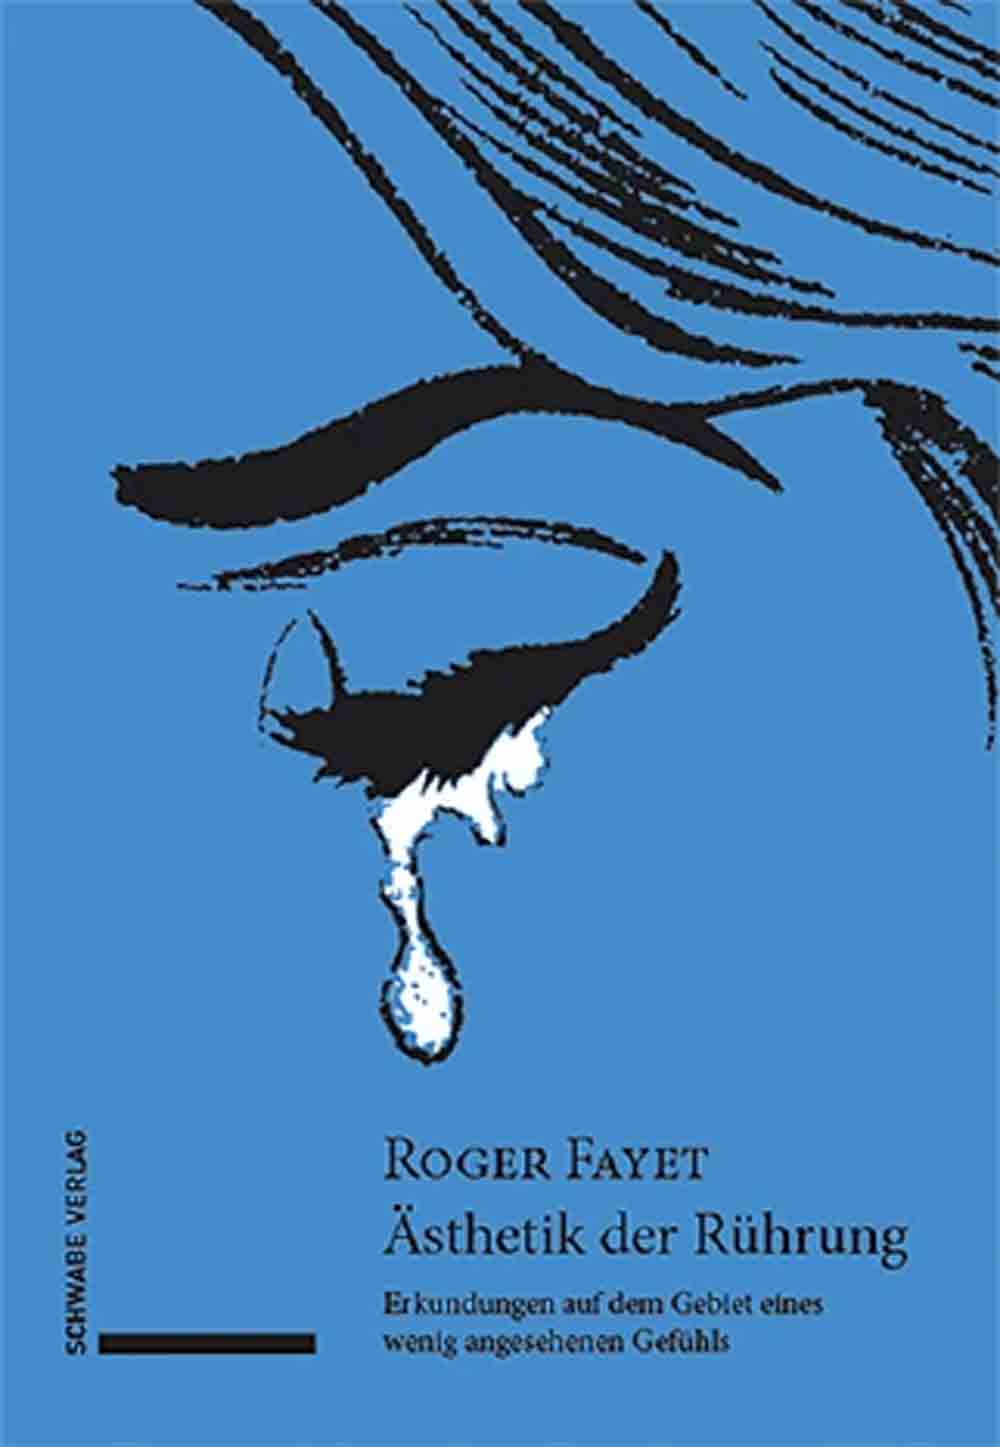 Lesetipps für Gütersloh: Roger Fayet, »Ästhetik der Rührung«, Erkundungen auf dem Gebiet eines wenig angesehenen Gefühls